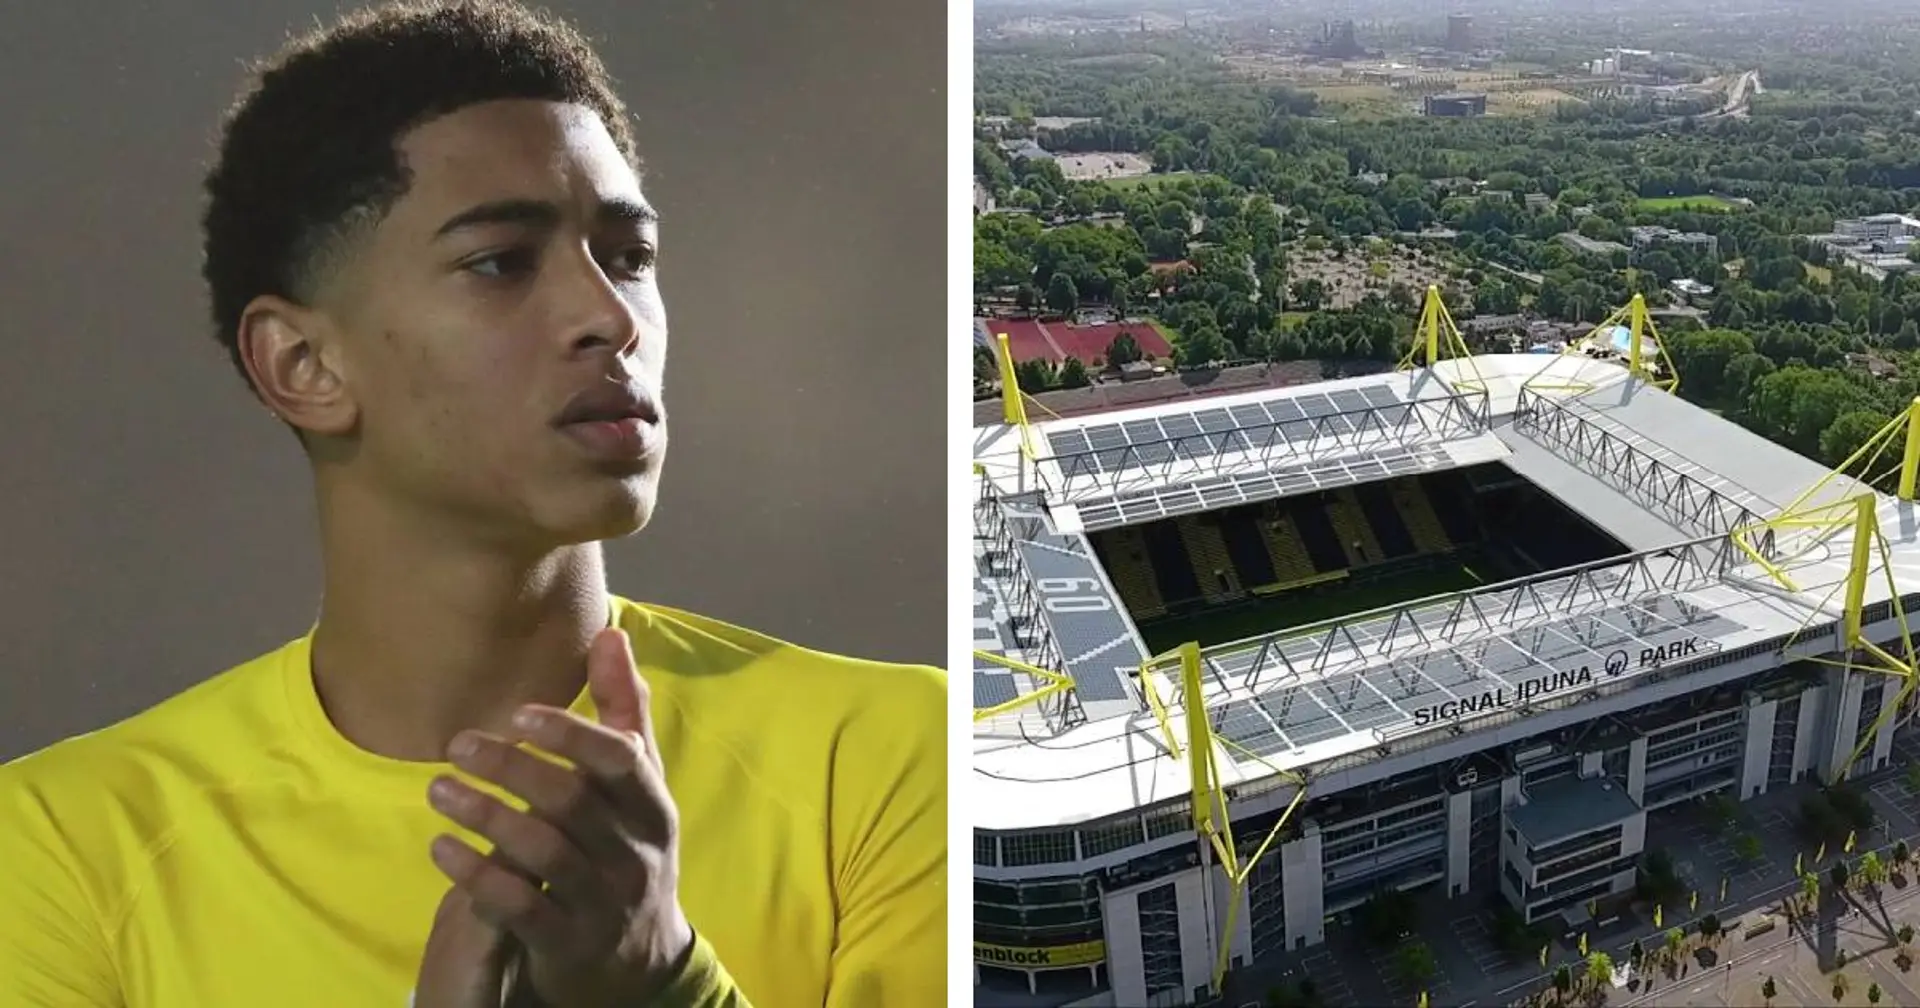 Bellingham: Den größten Eindruck in Dortmund hat auf mich das Stadion gemacht